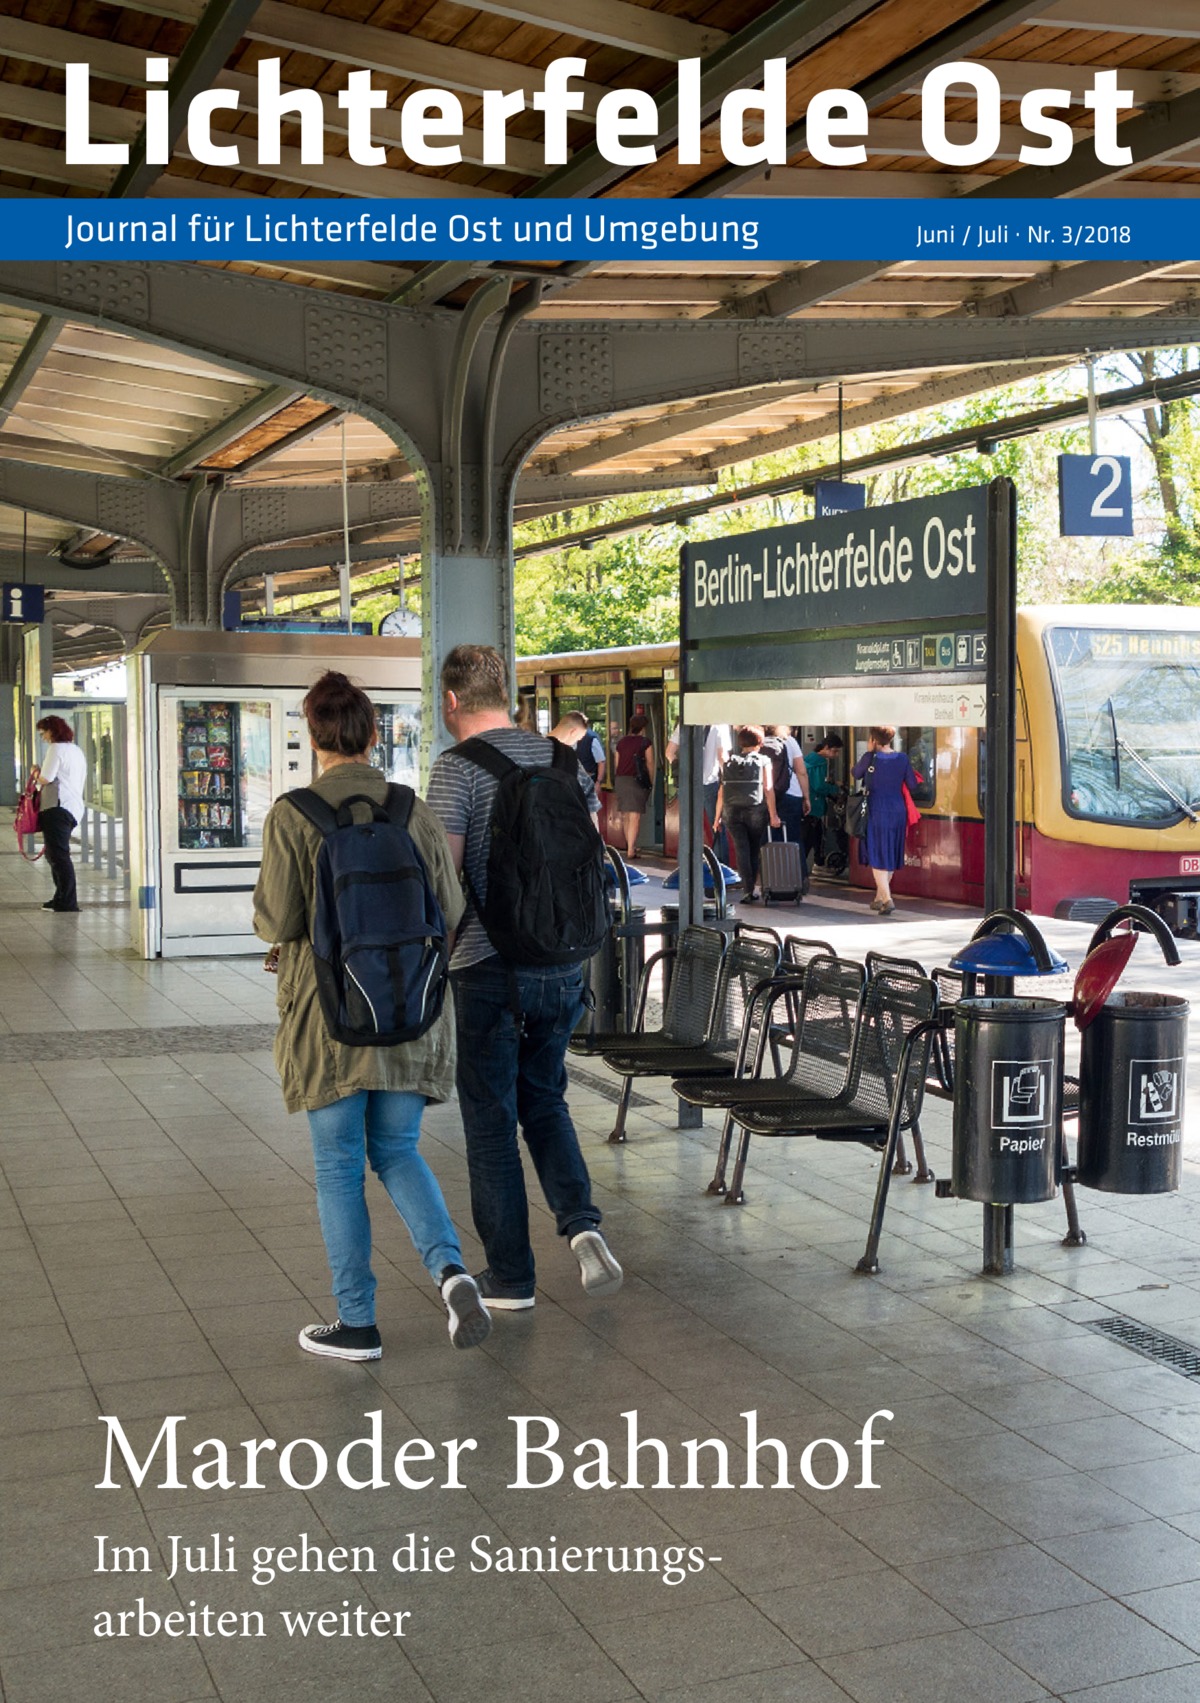 Lichterfelde Ost Journal für Lichterfelde Ost und Umgebung  Maroder Bahnhof Im Juli gehen die Sanierungsarbeiten weiter  Juni / Juli · Nr. 3/2018